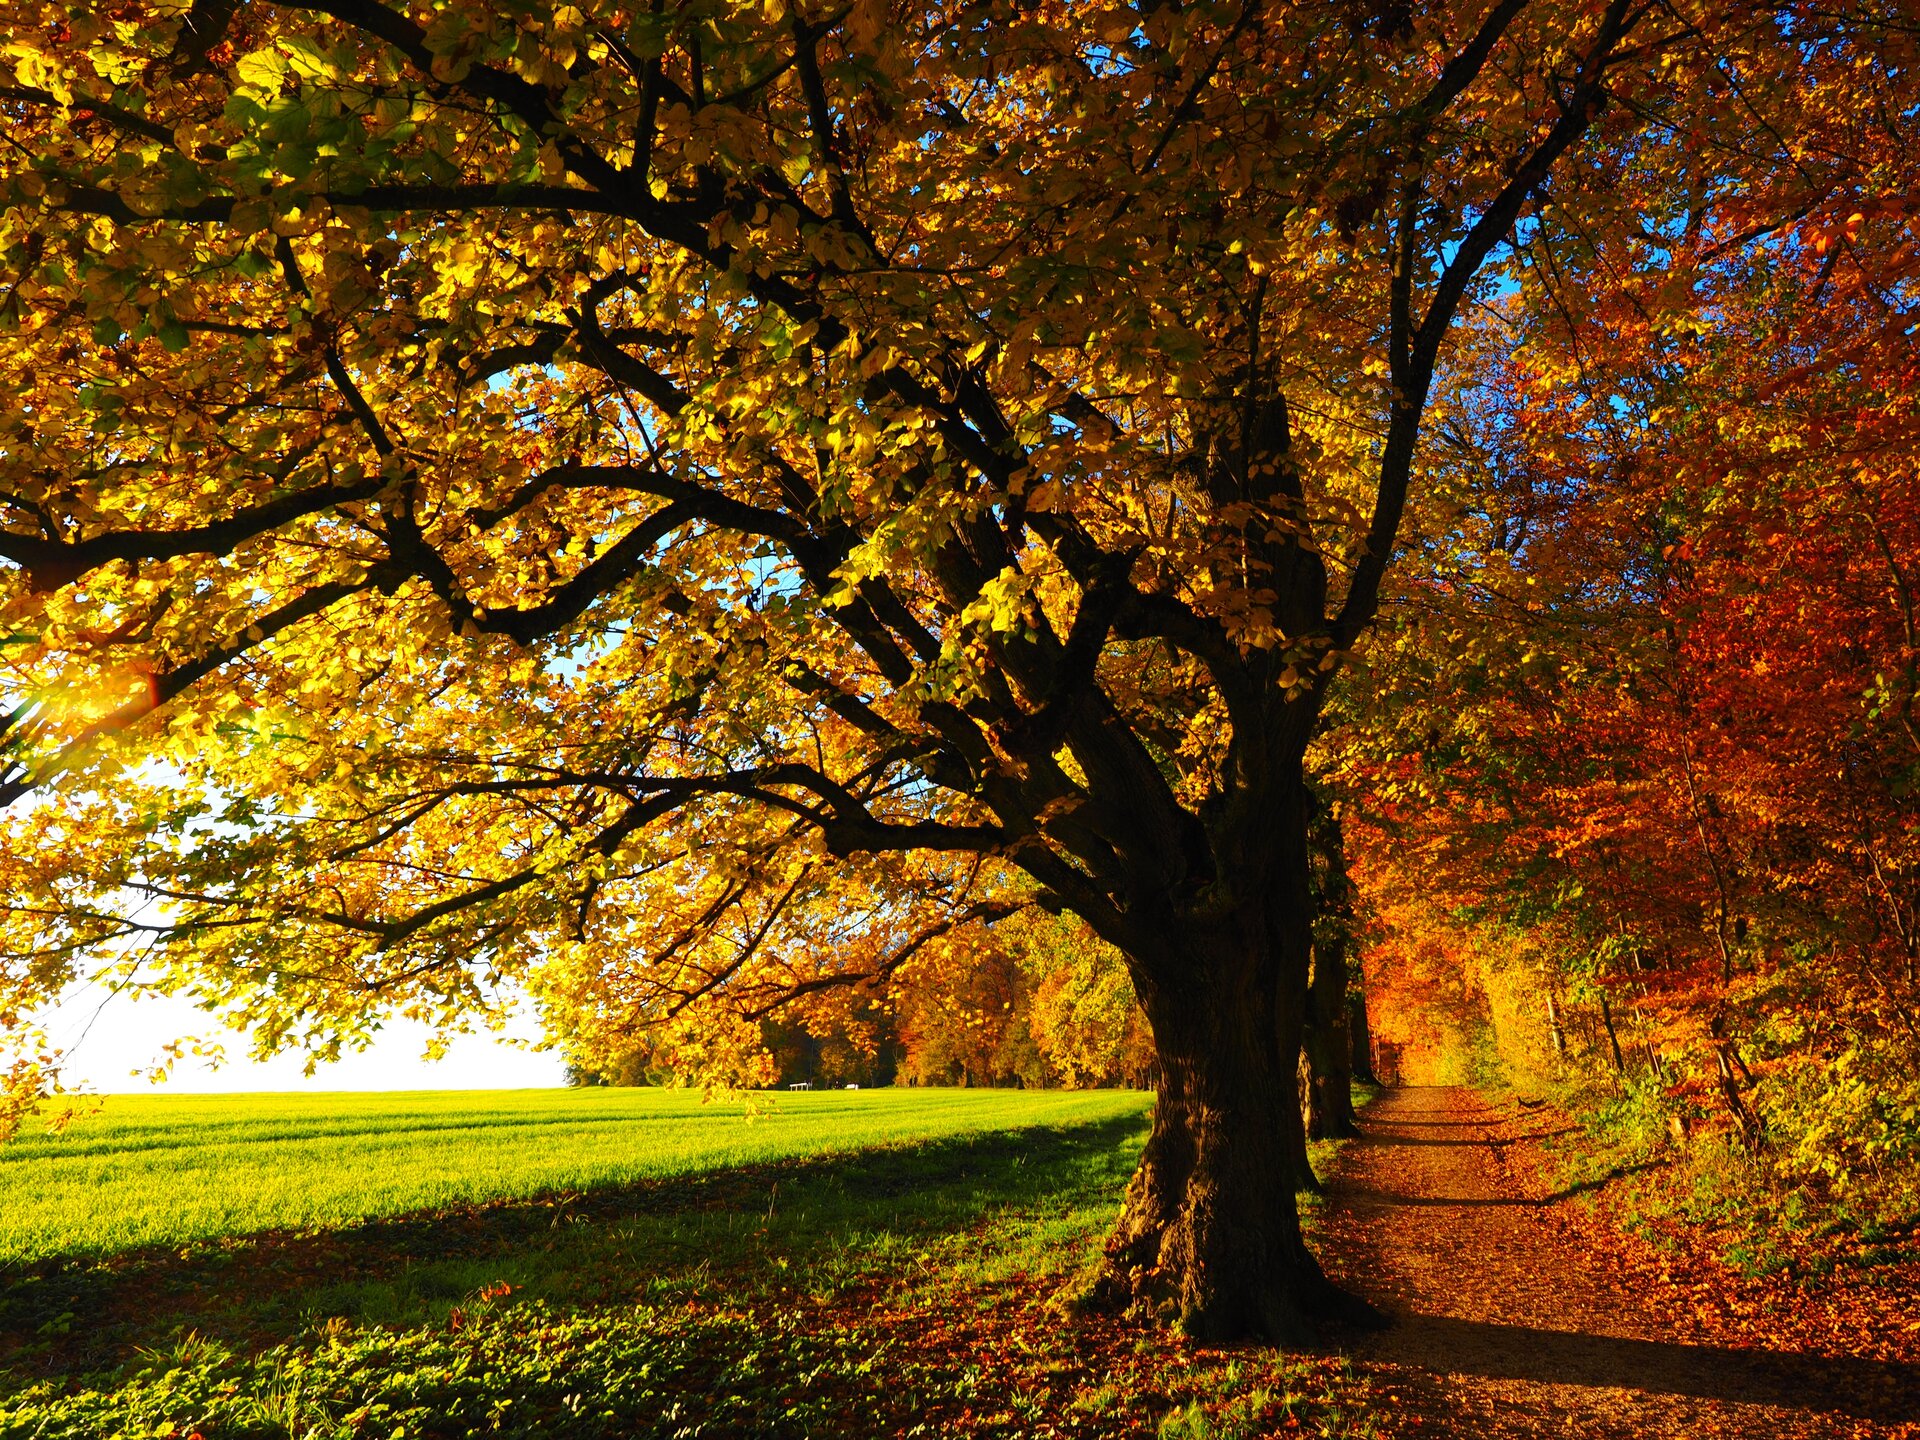 Fotografia przedstawia słoneczny, jesienny krajobraz - drzewa pokryte czerwonymi, złotymi i brązowymi liśćmi.